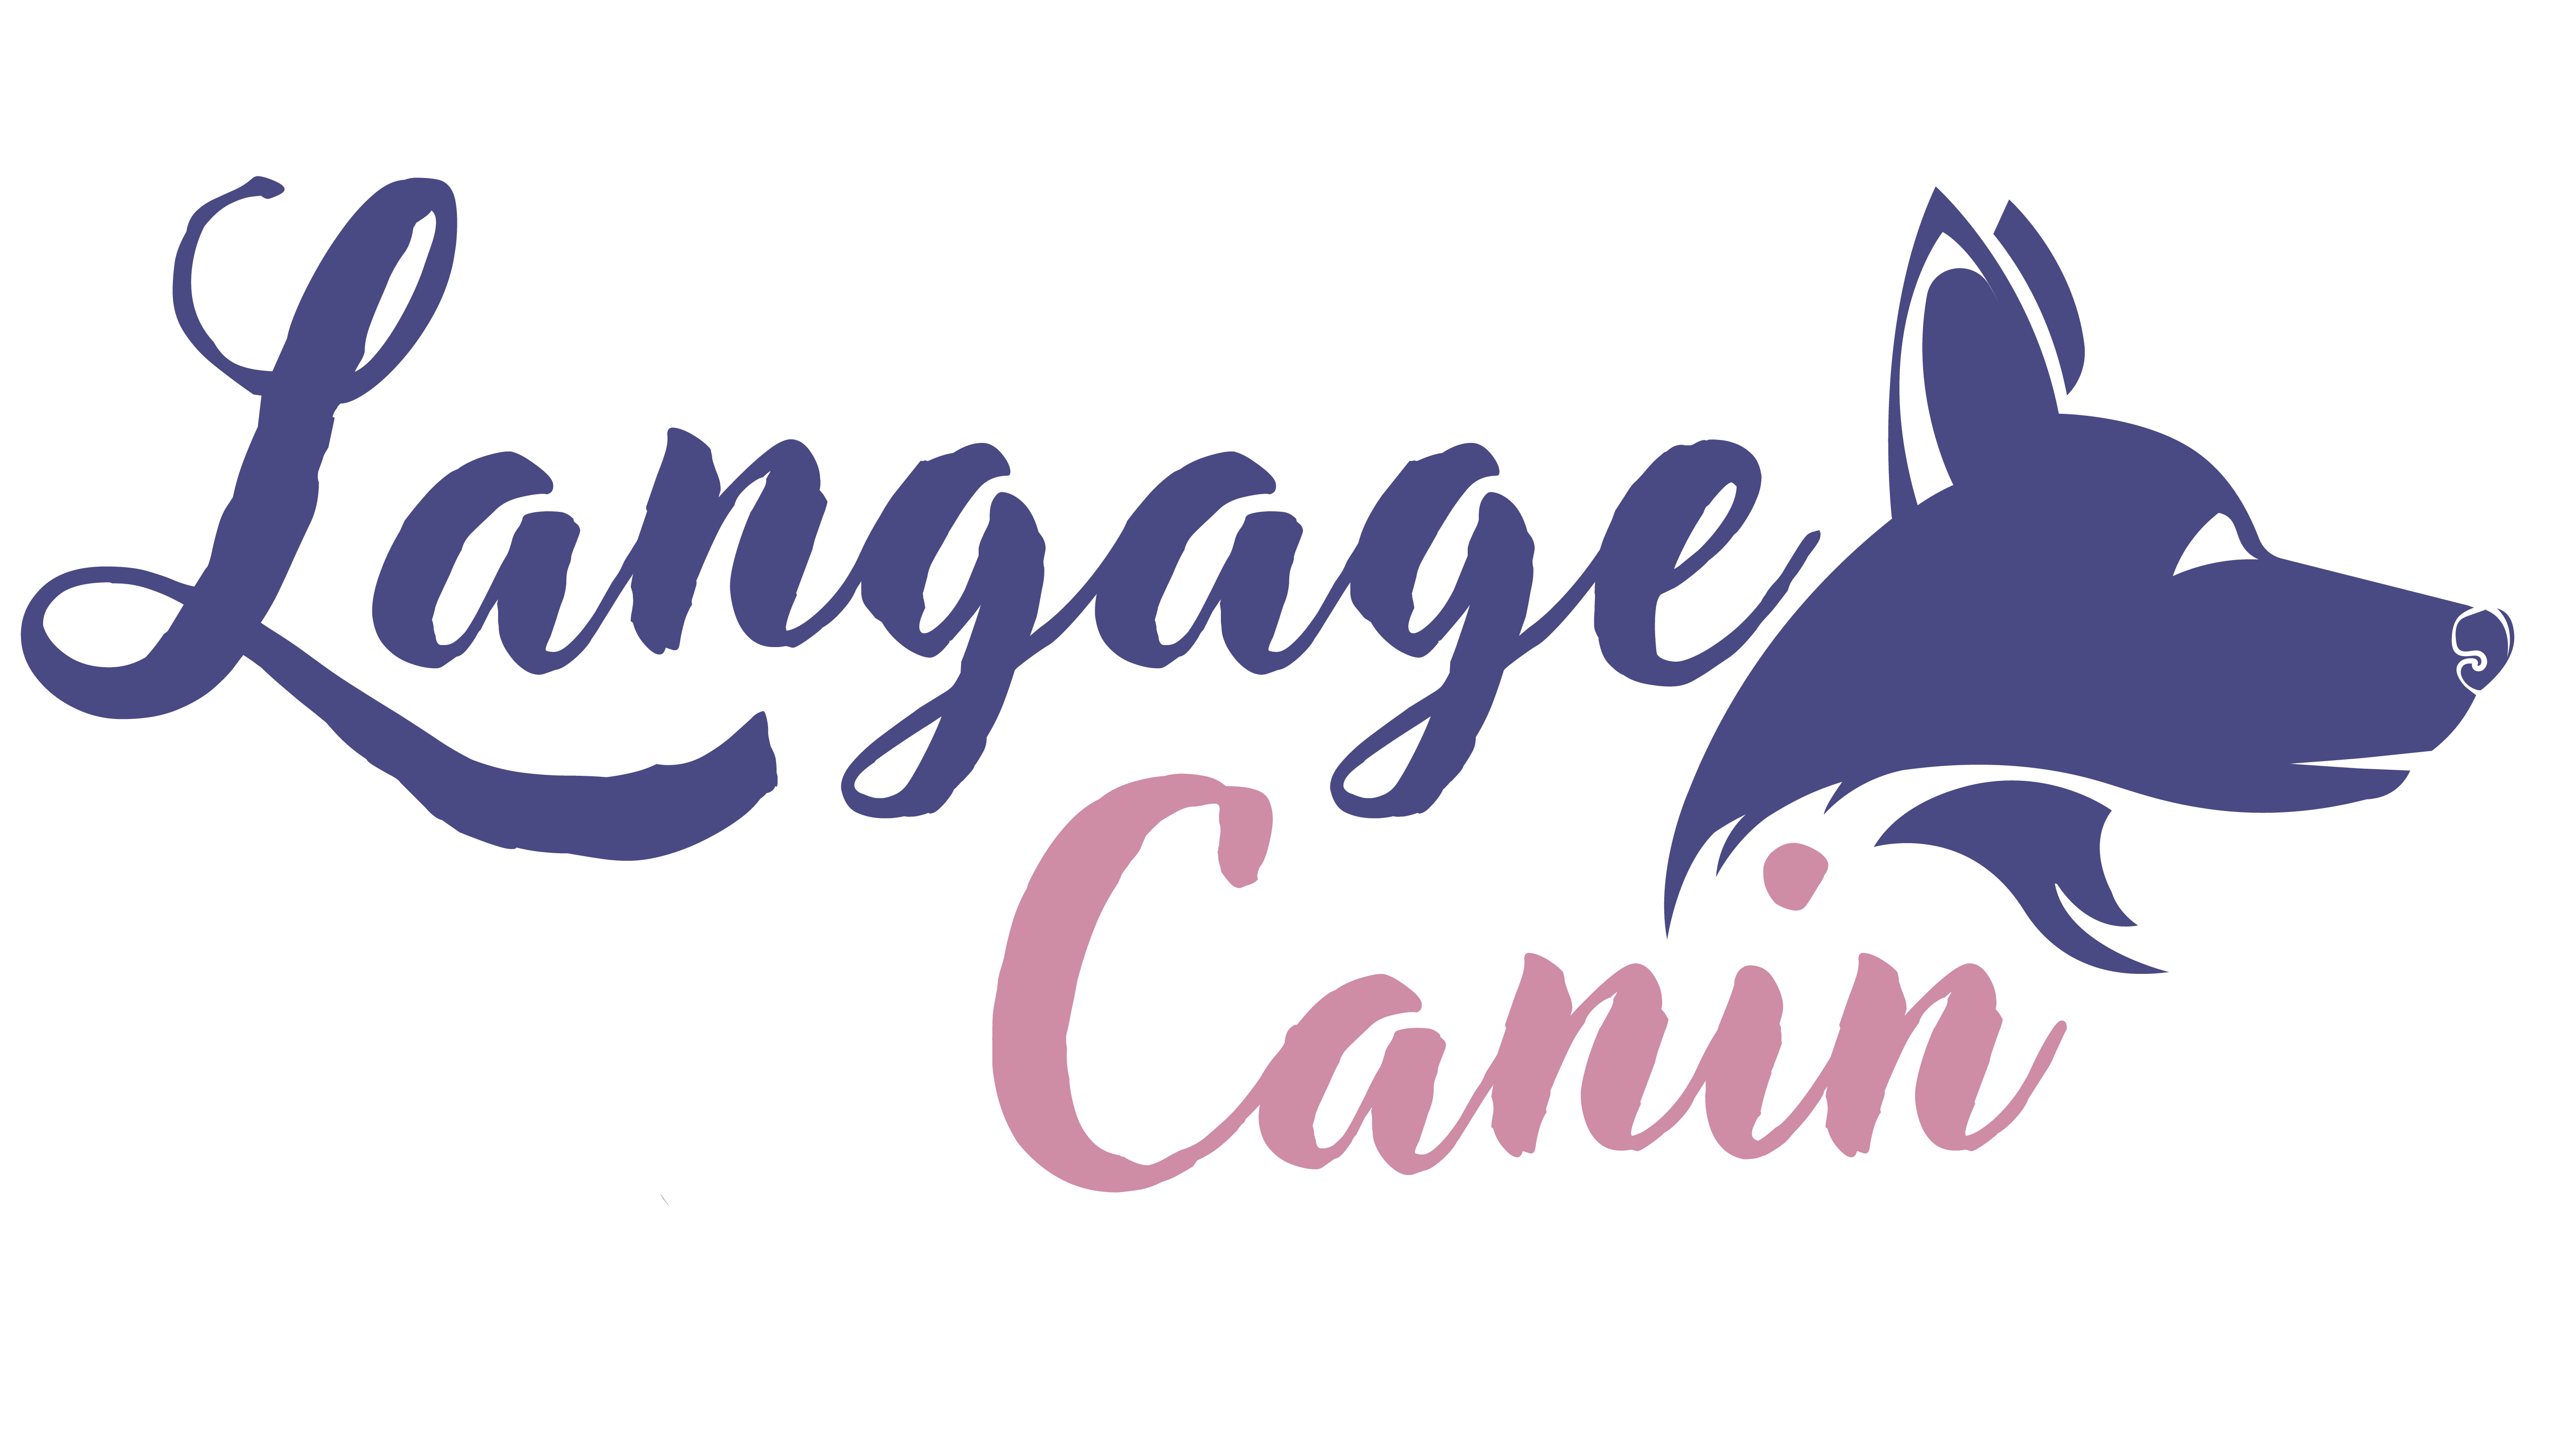 Logo Langage canin